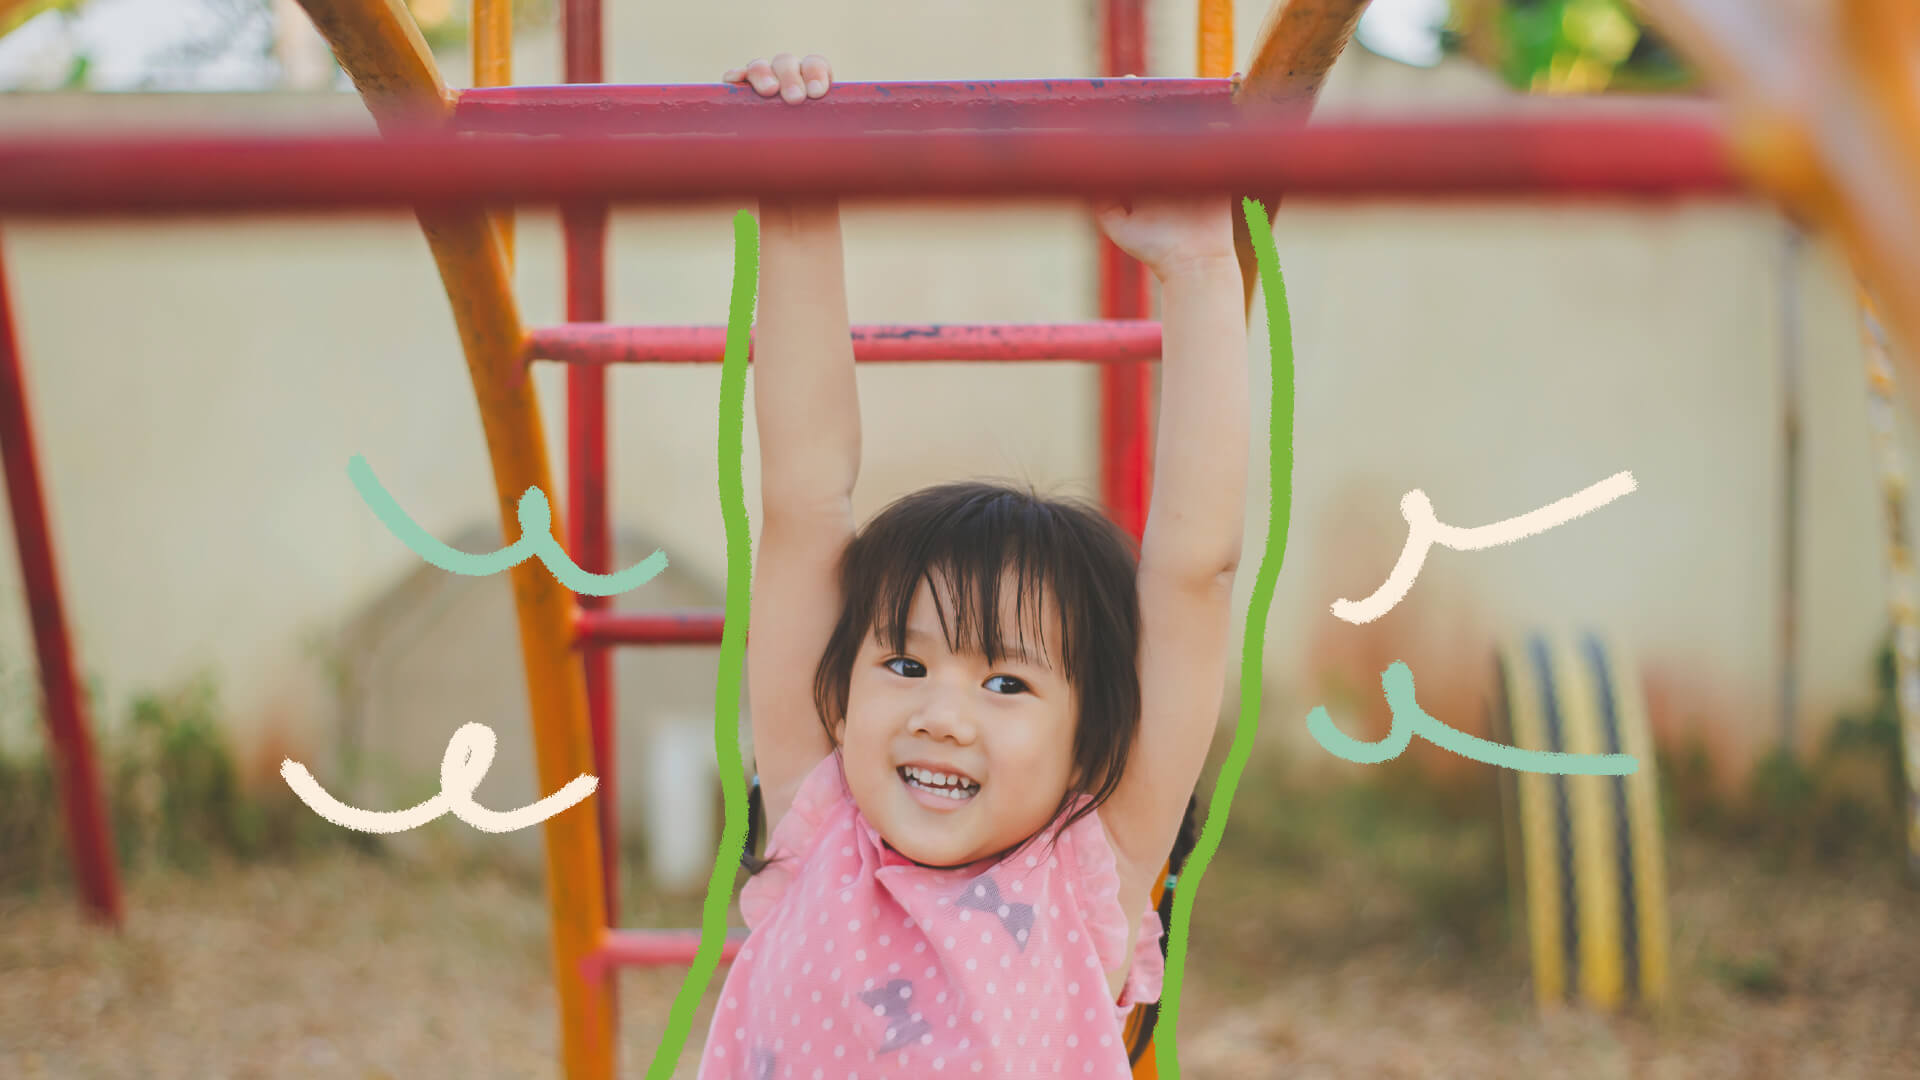 Na foto, uma menina de etnia amarela brinca em uma barra de metal. A imagem possui intervenções de rabiscos coloridos.